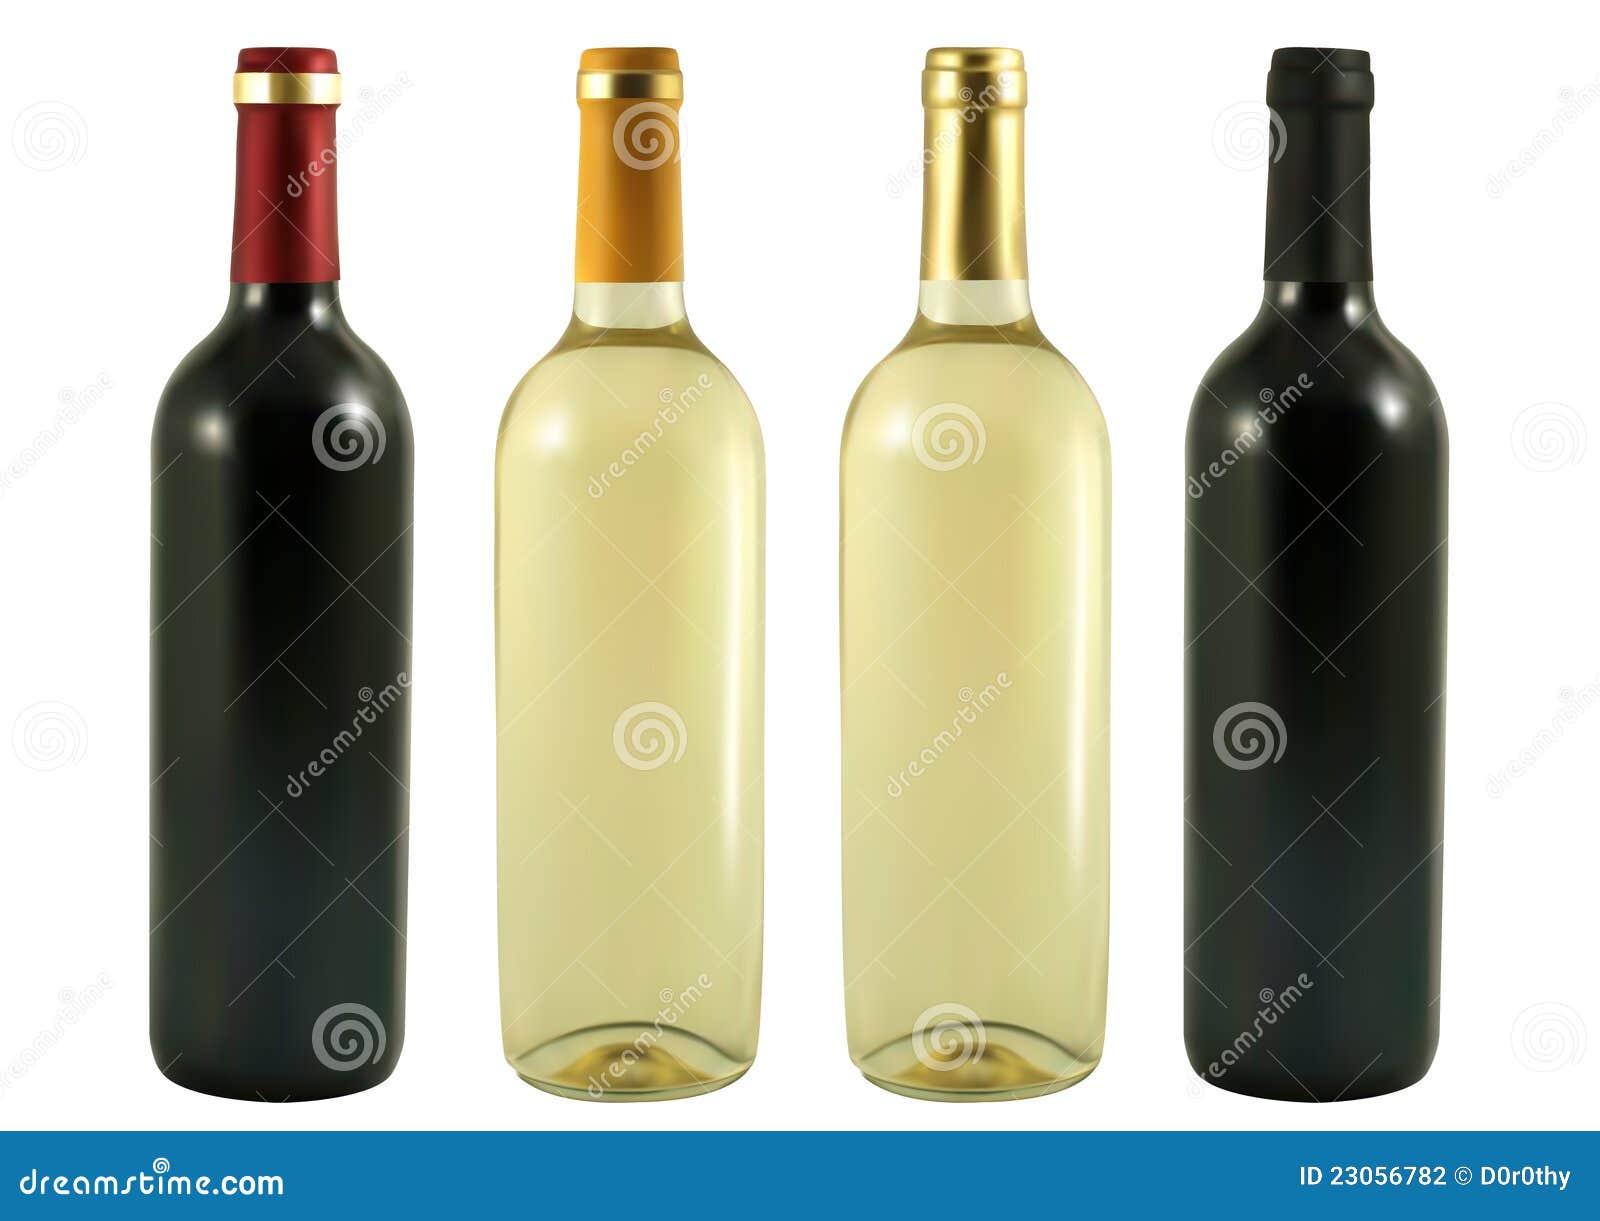 four wine bottles